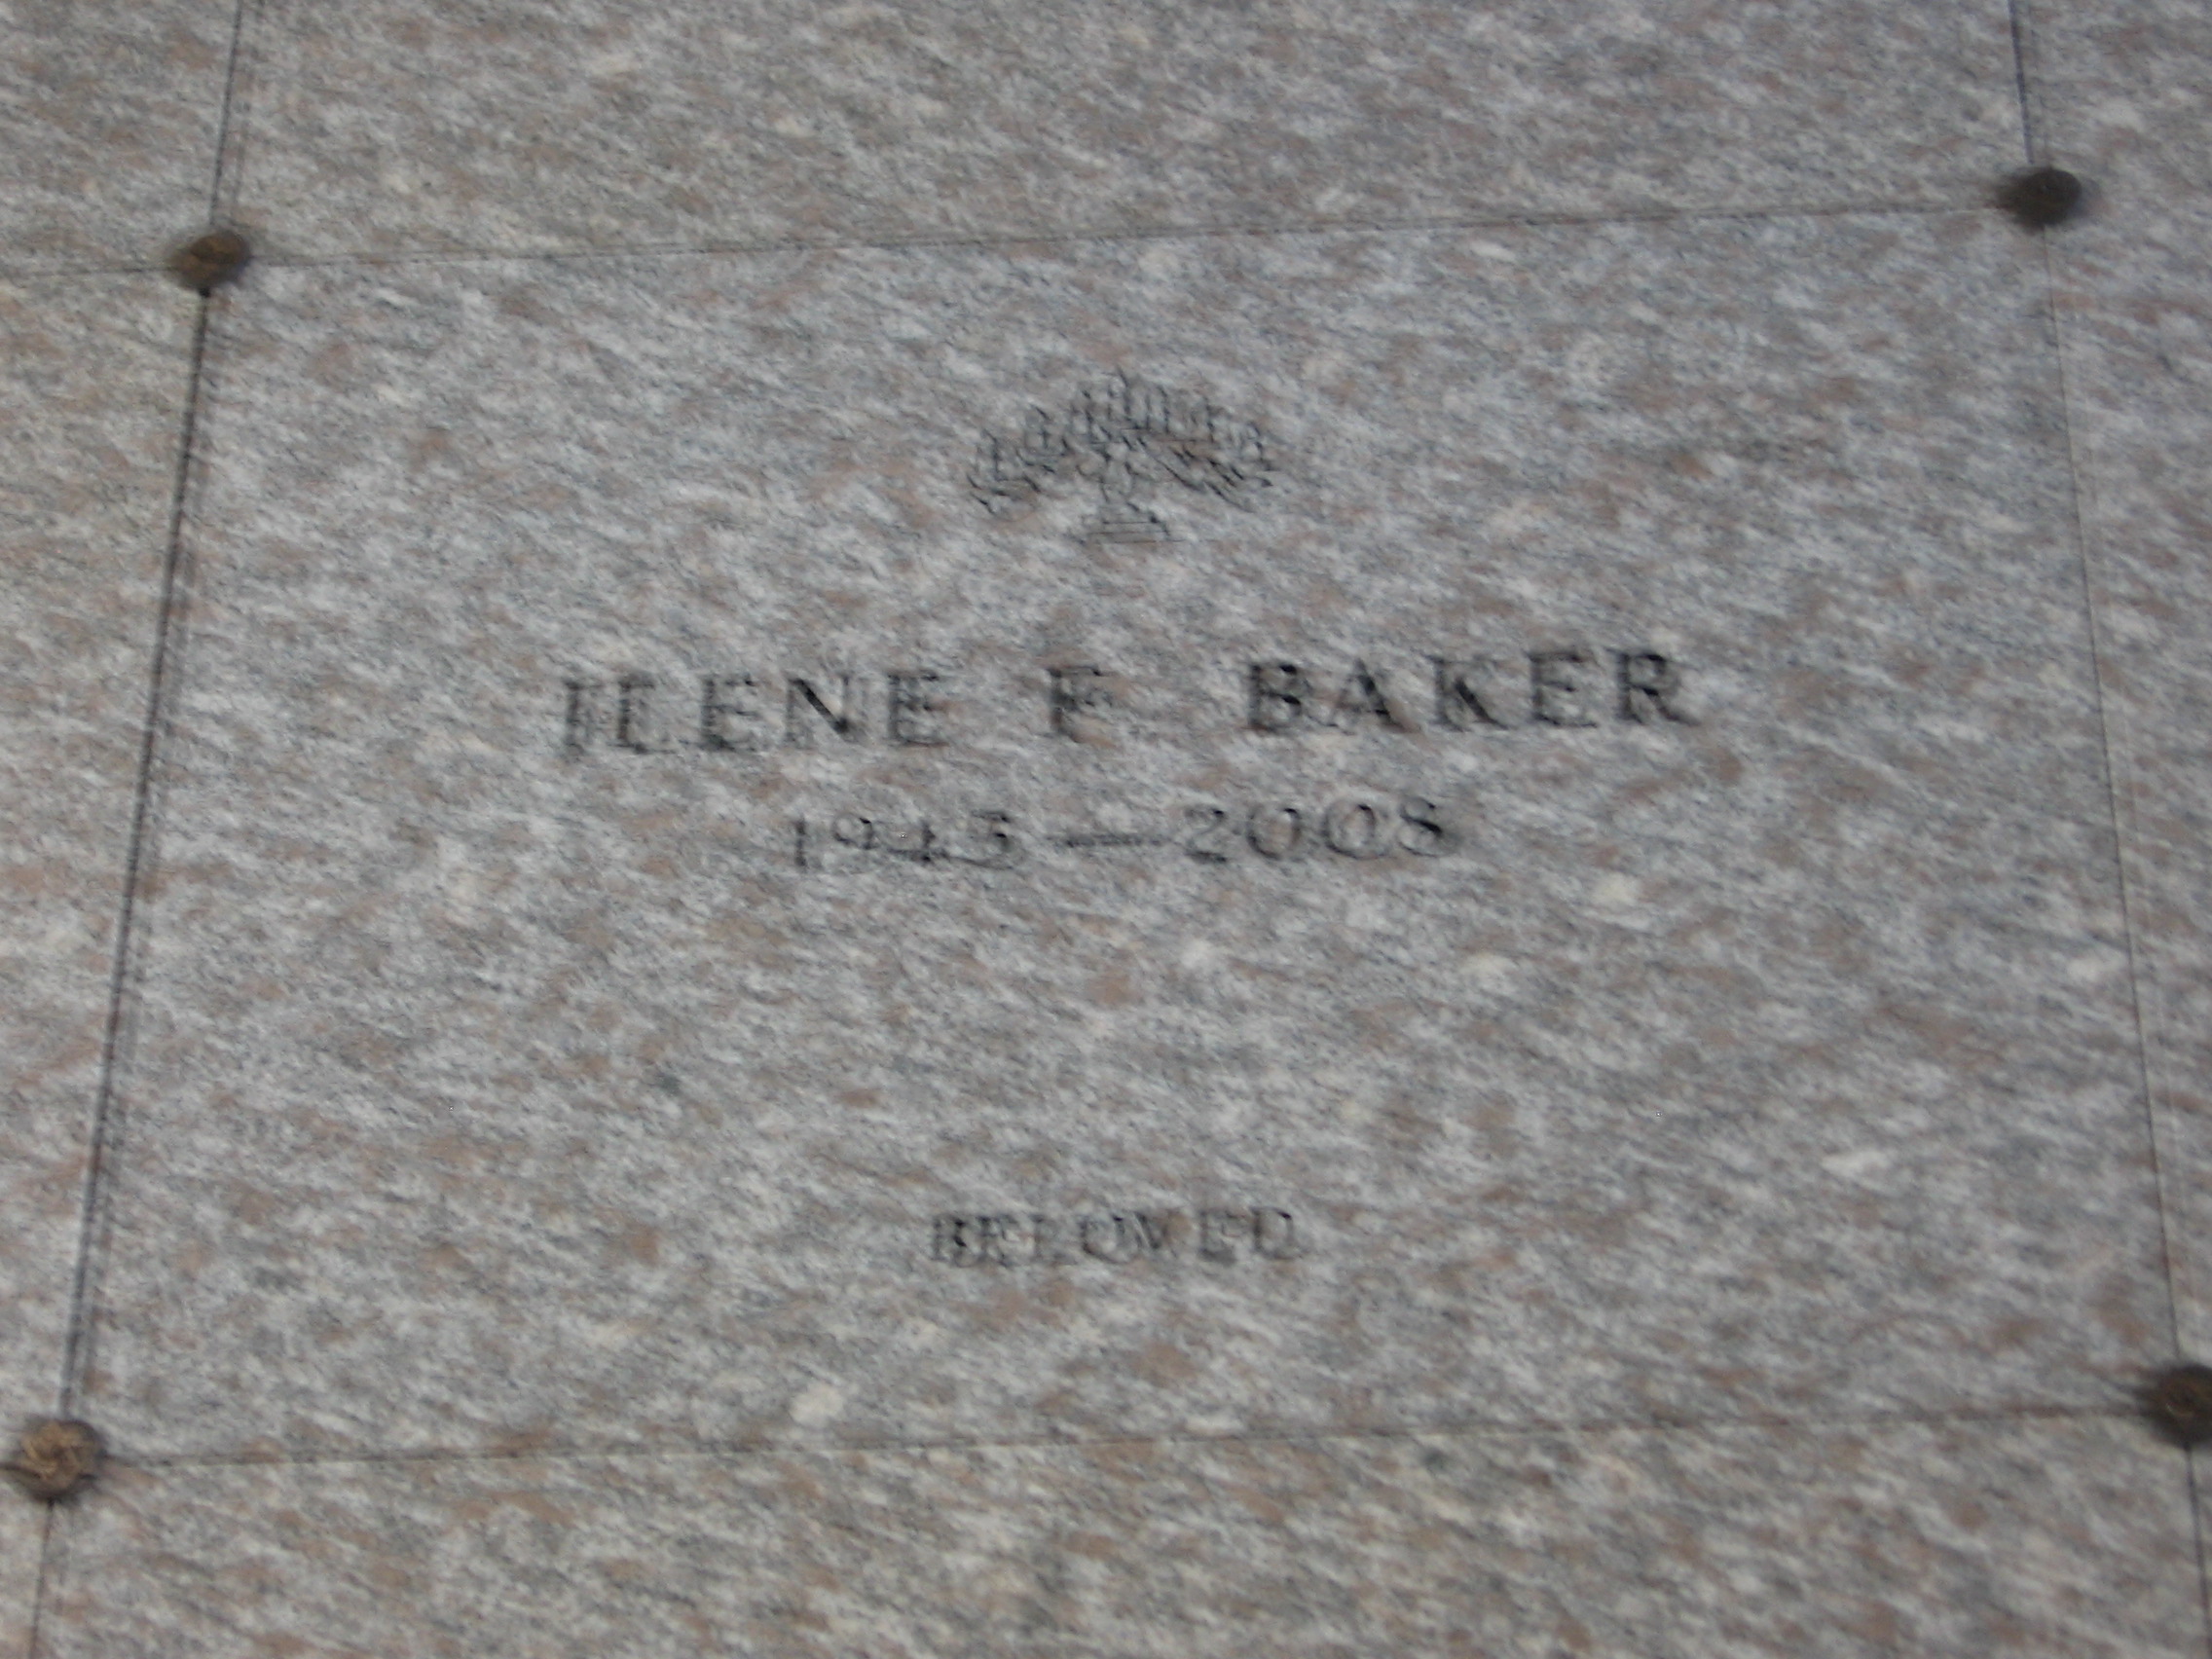 Irene F Baker